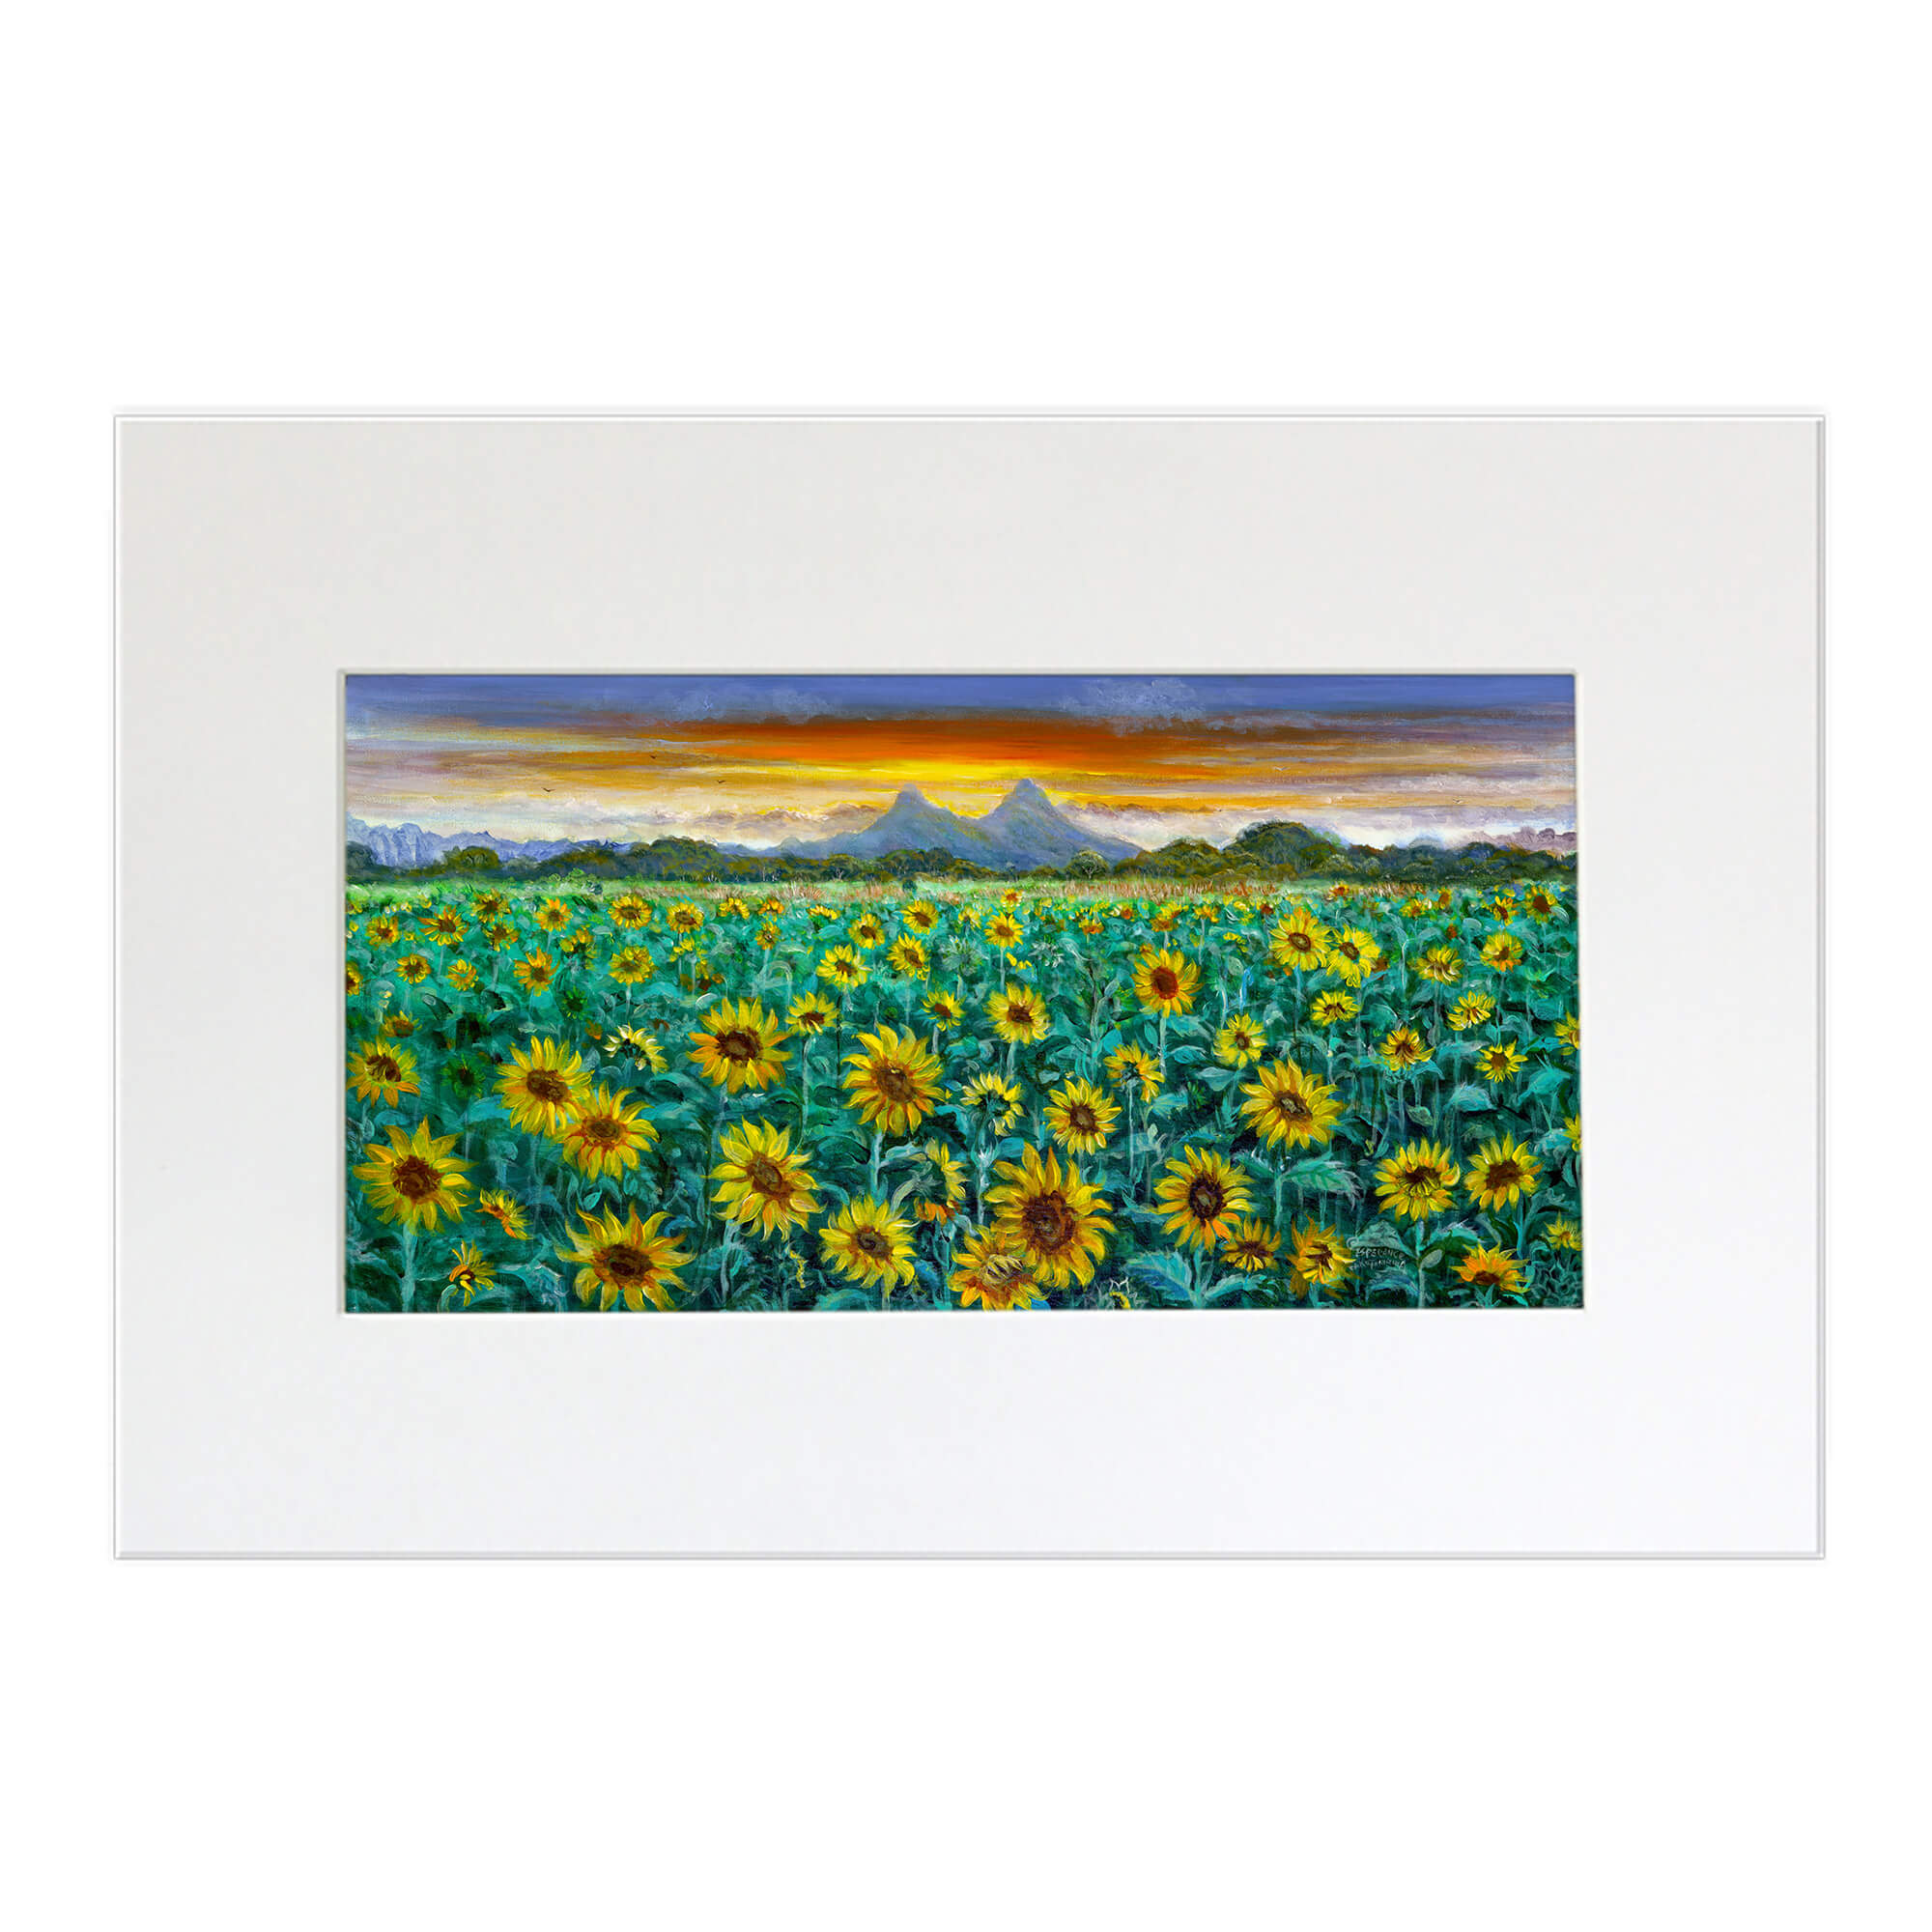 Matted art print featuring a field of sunflowers by hawaii artist Esperance Rakotonirina